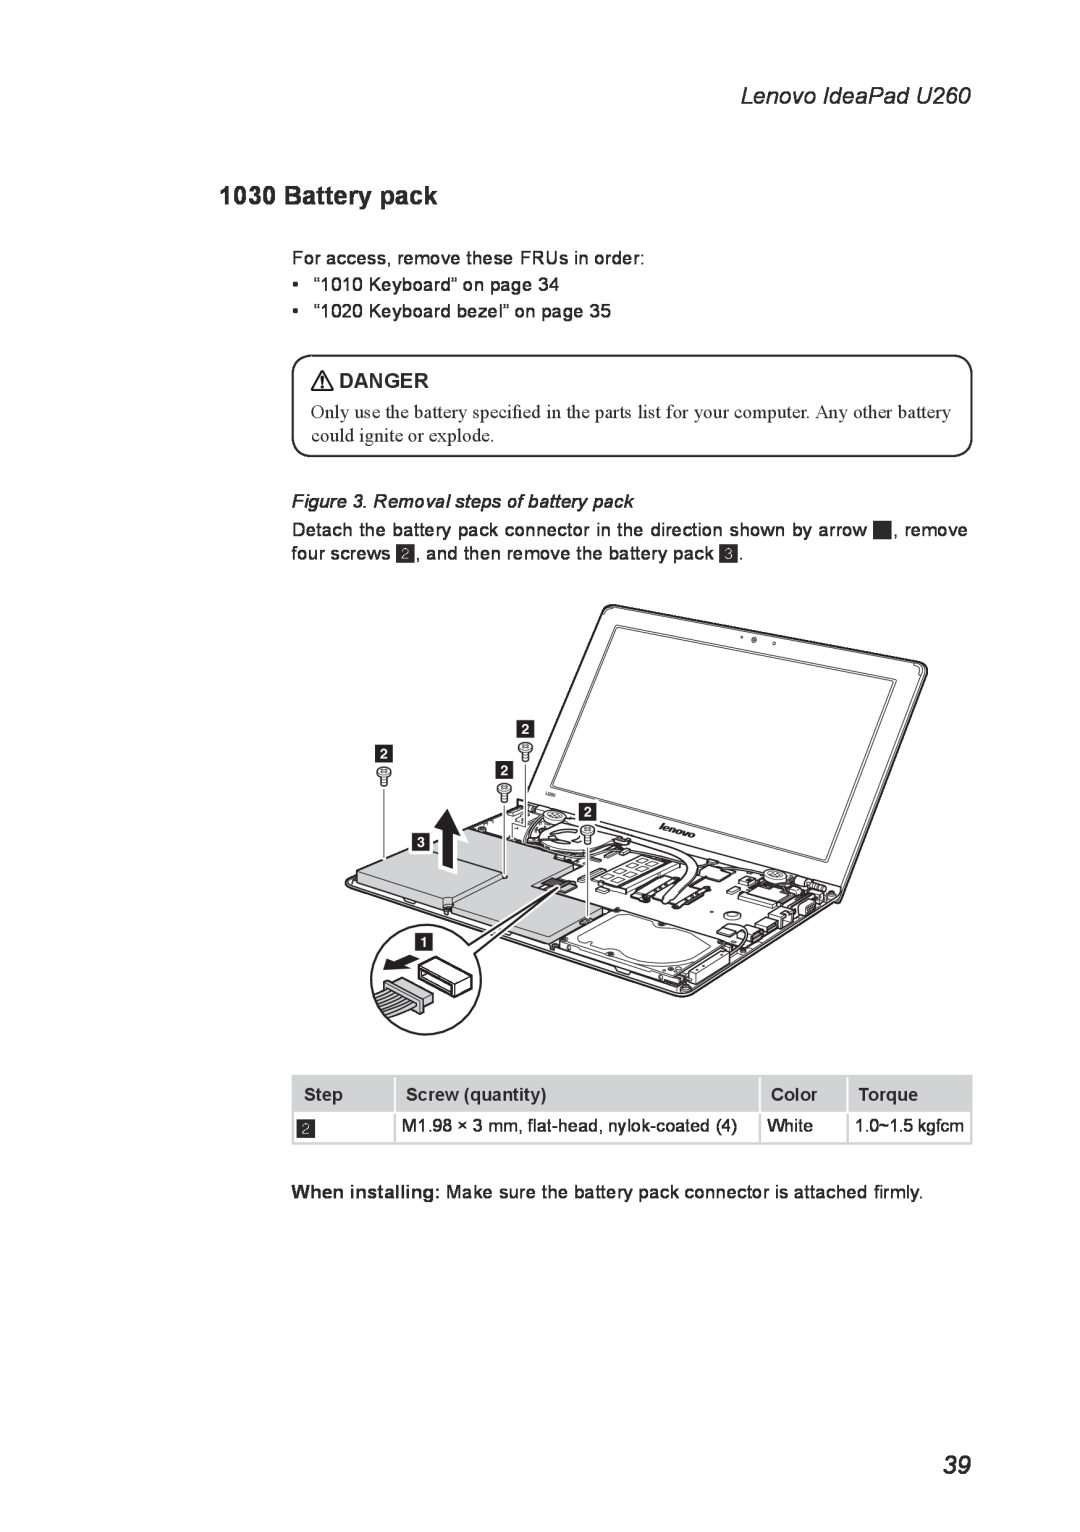 Lenovo manual Battery pack, Removal steps of battery pack, Lenovo IdeaPad U260, Danger 